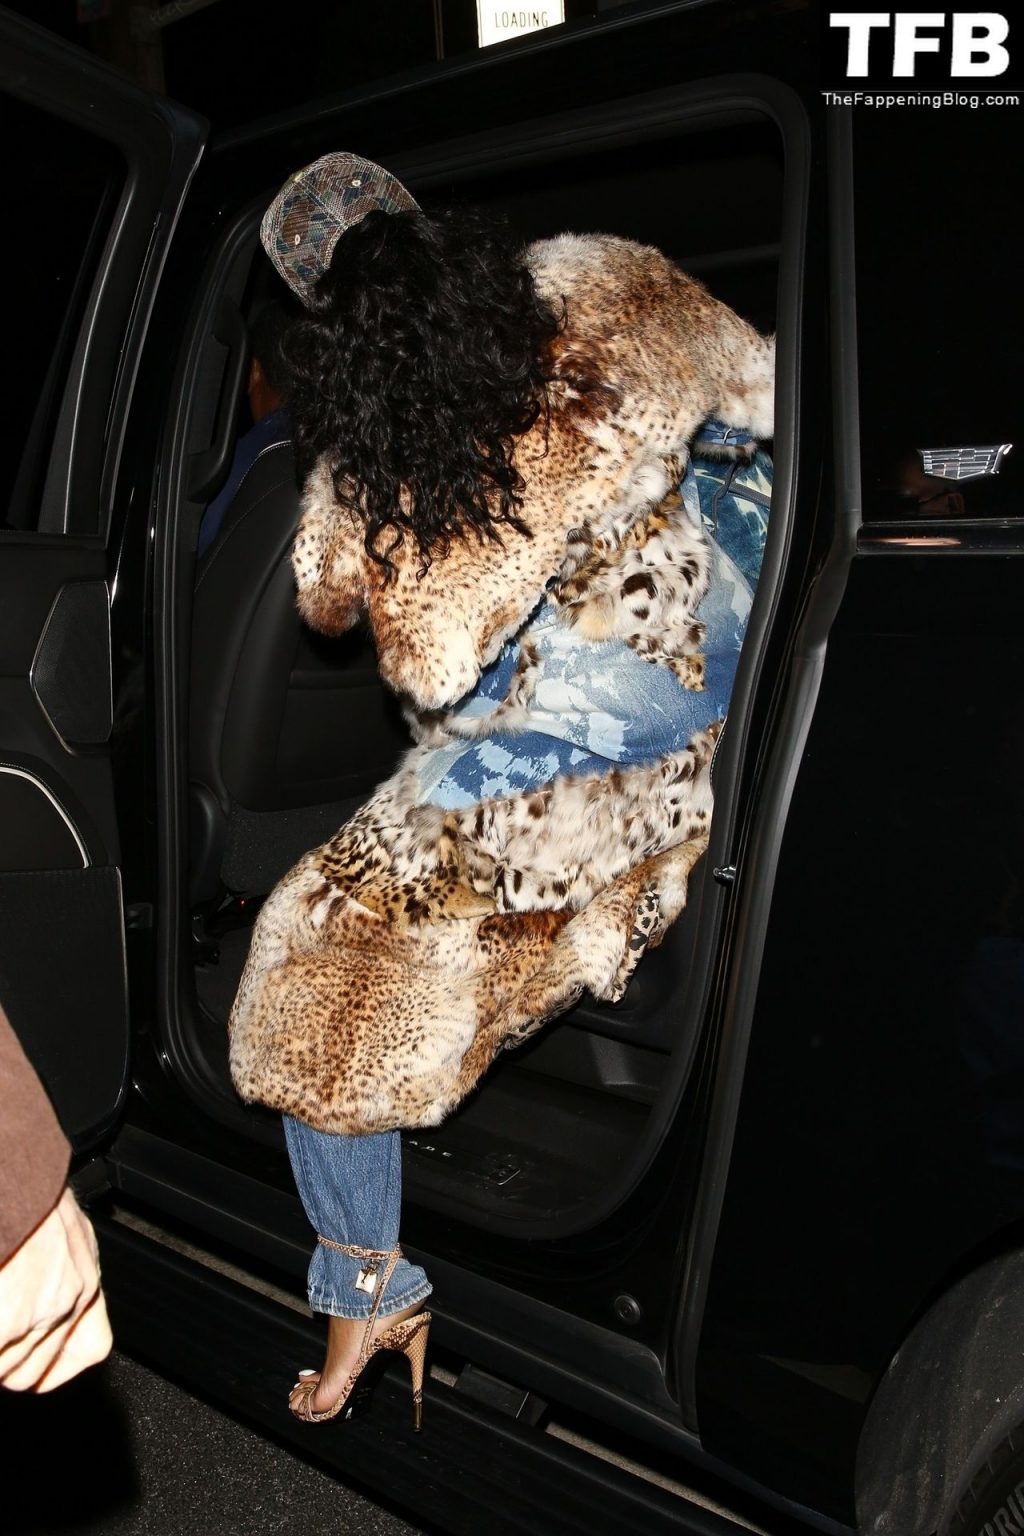 Rihanna Shows Off Her Growing Baby Bump as She Exits Giorgio Baldi (27 Photos)